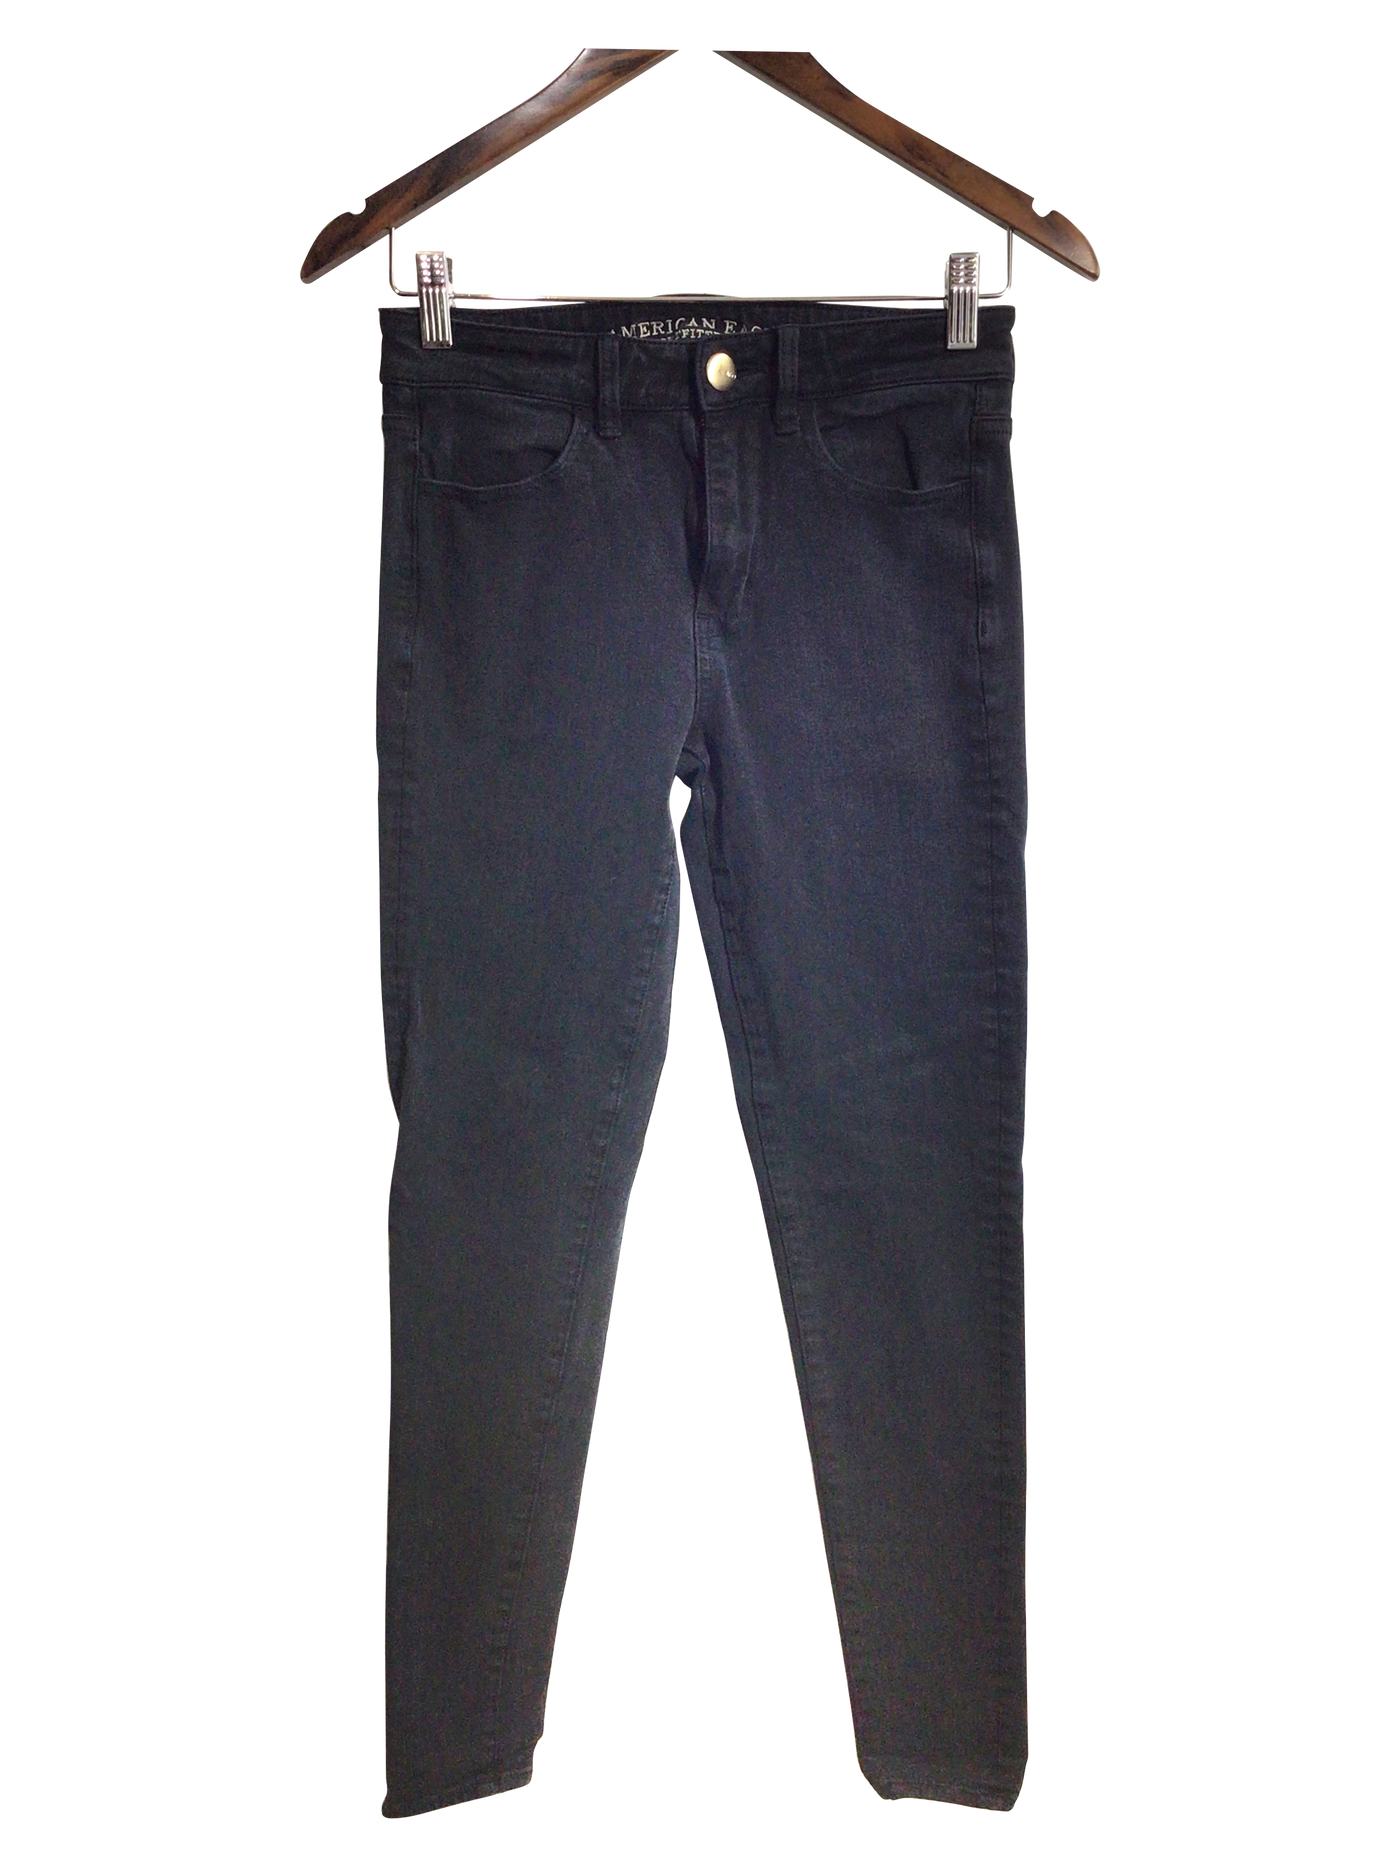 AMERICAN EAGLE Women Straight-Legged Jeans Regular fit in Black - Size 4 | 16.32 $ KOOP